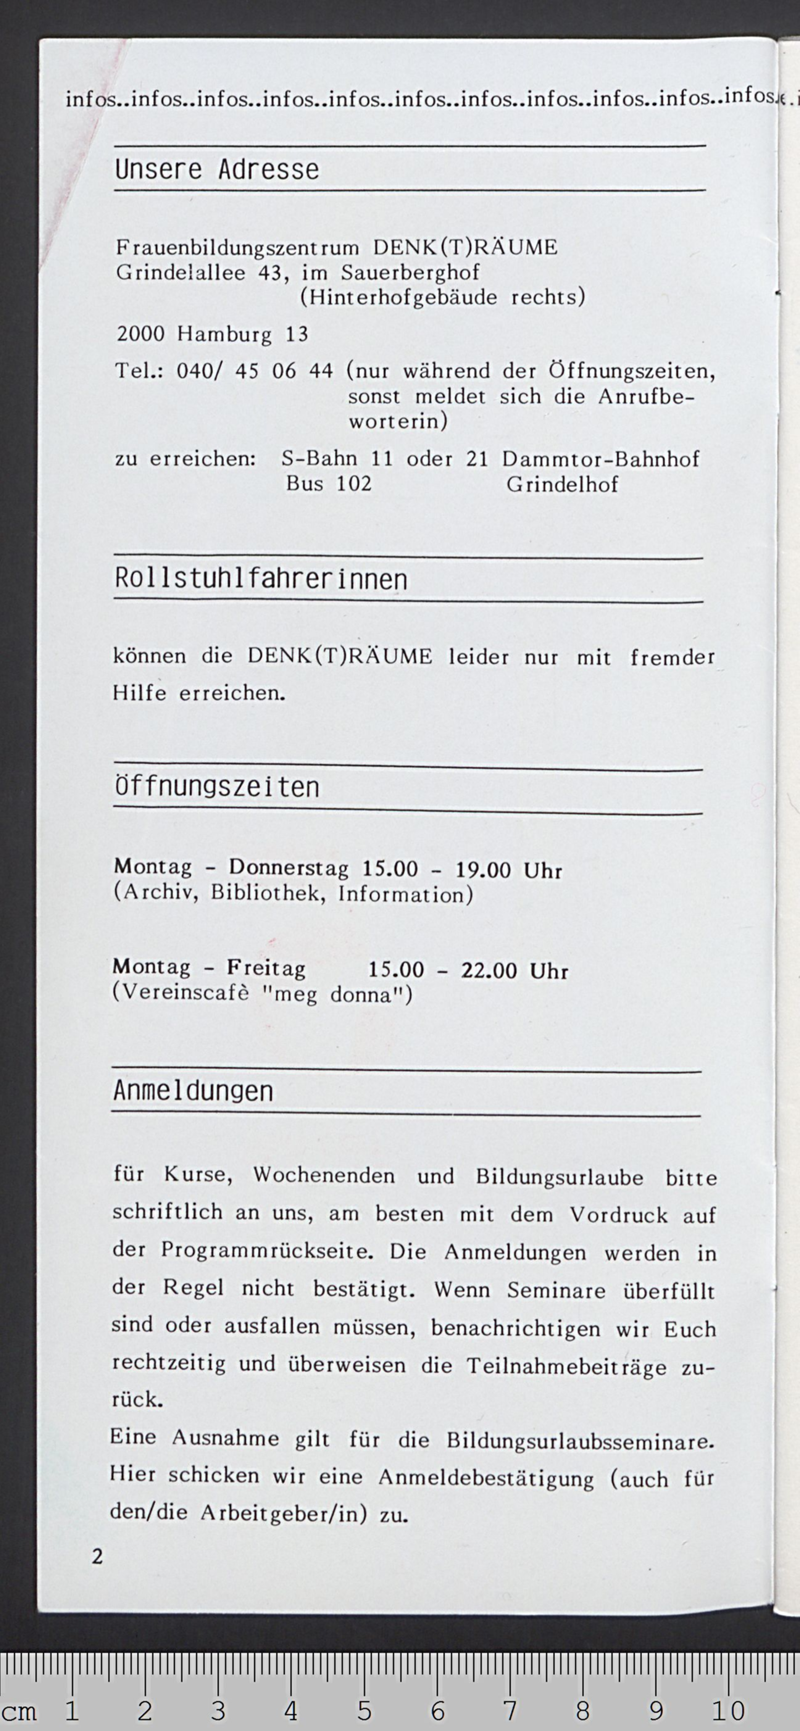 Frauenbildungszentrum DENKtRÄUME : 5 Jahre: Kurse - Archiv - Bibliothek; Sommerprogramm '88